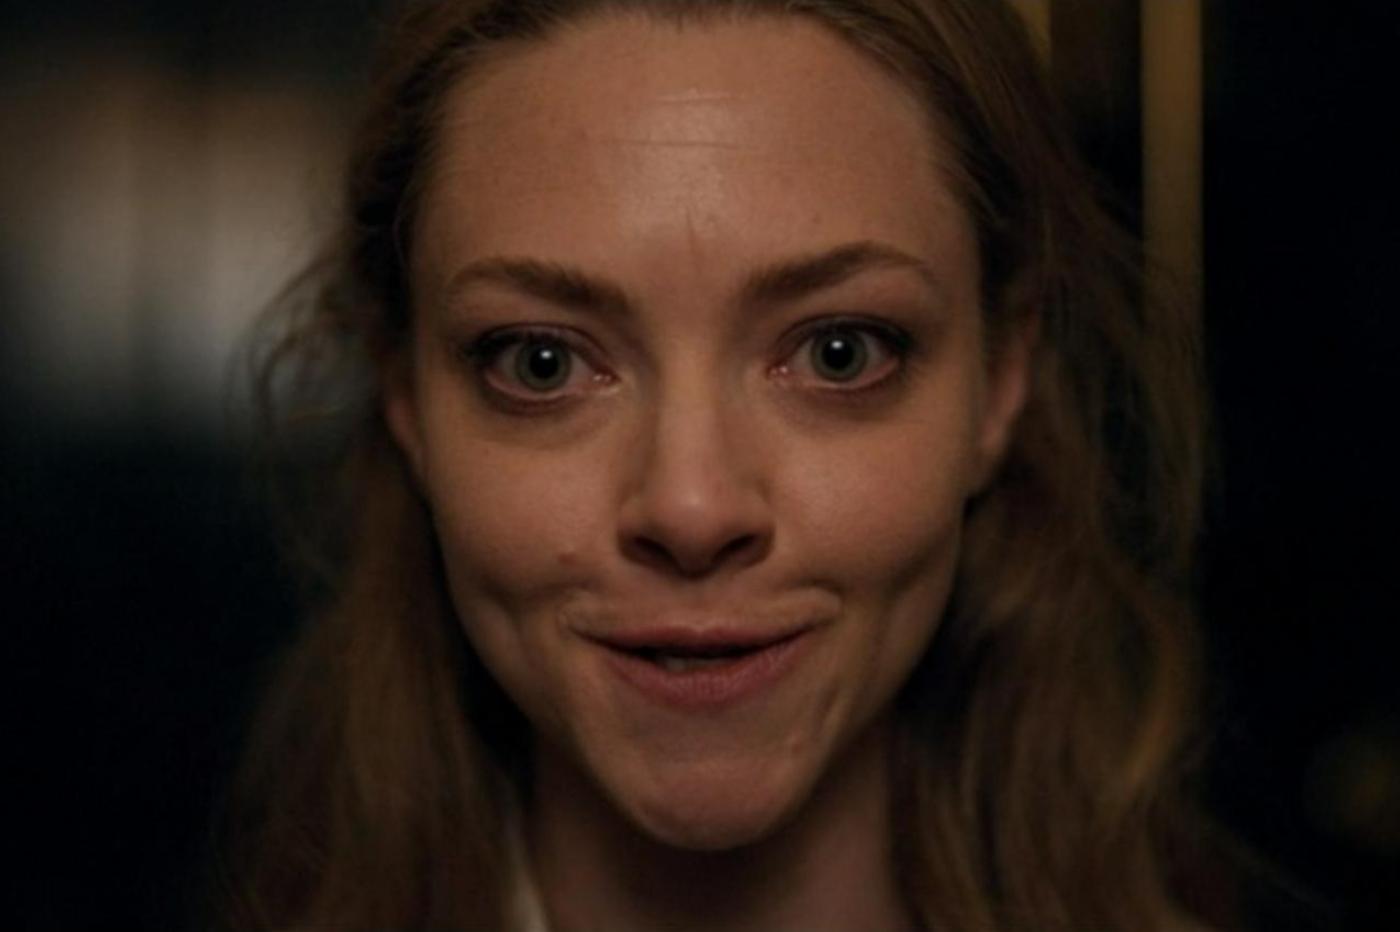 Capture d'écran de la série The Dropout montrant Elizabeth Holmes en train d'essayer de faire des expressions faciale devant un miroir. Son regard est terrifiant sur cette image.